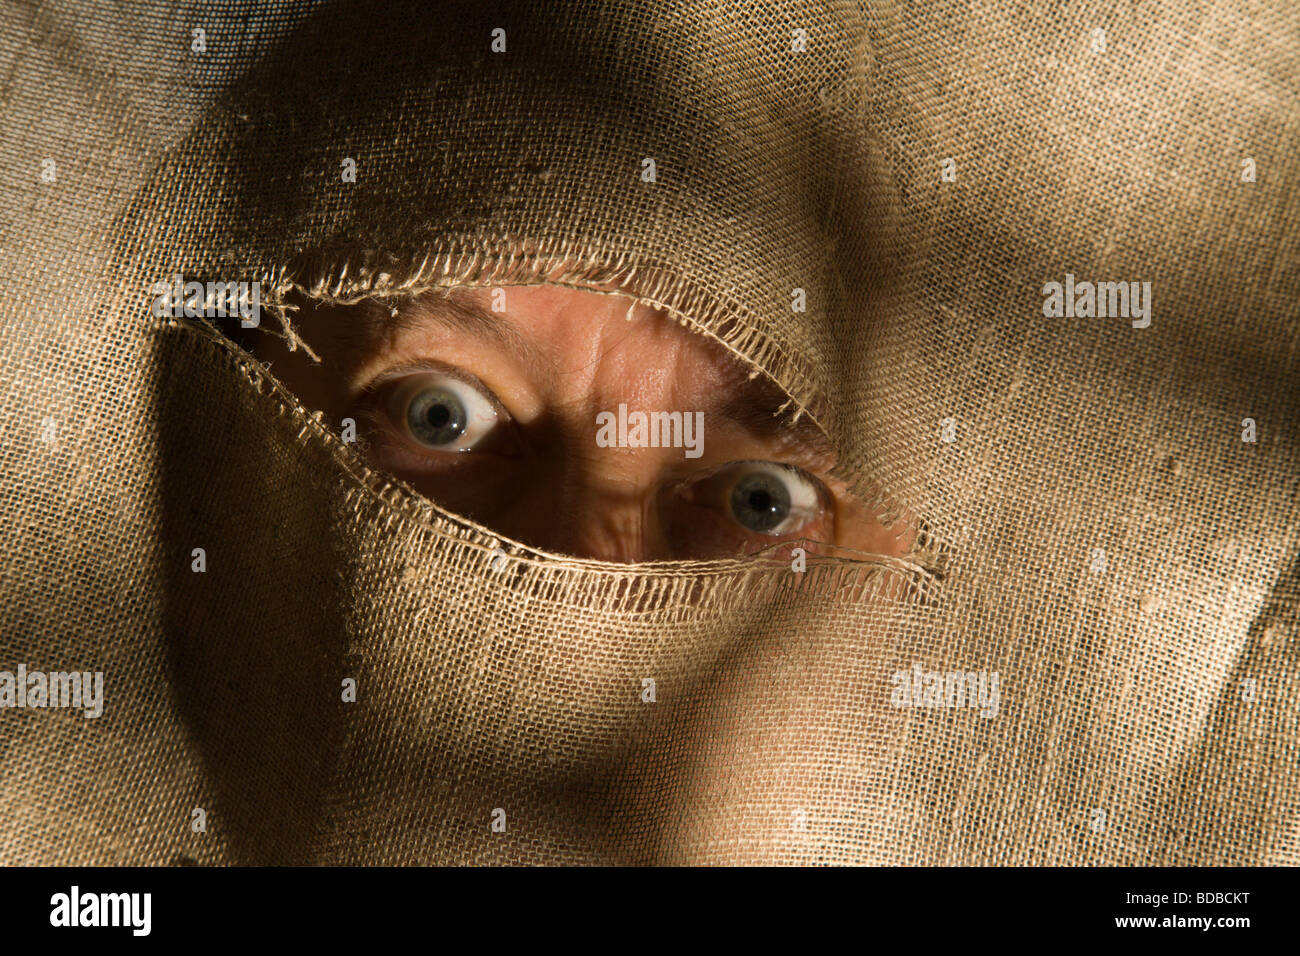 Augen starren drohend durch einen Riss im Stoff Stockfotografie - Alamy